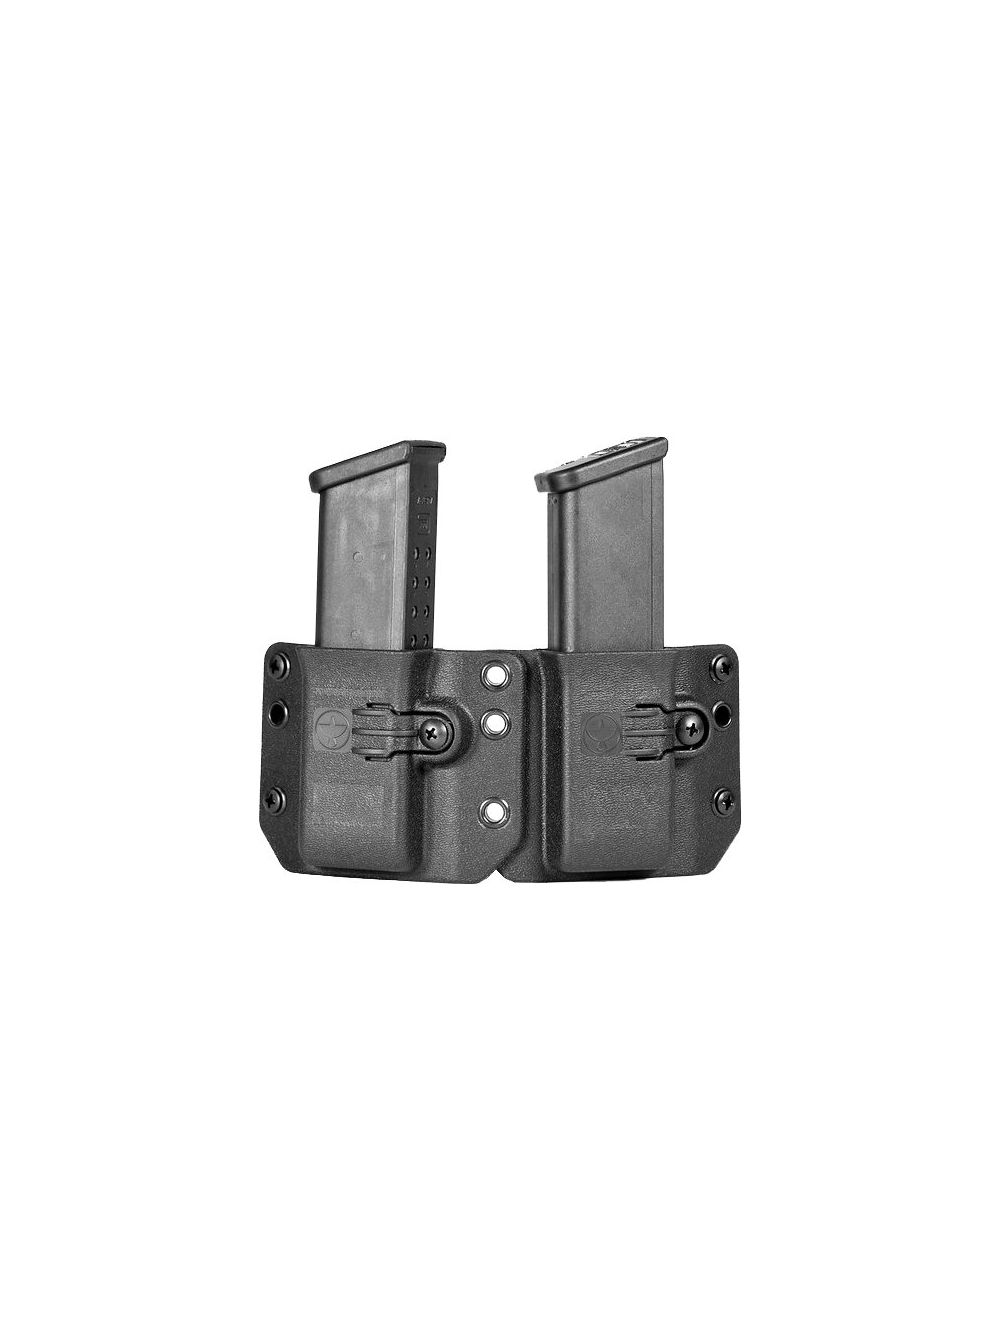 Copia Pistol - Short Profile (Double Magazine Carrier)